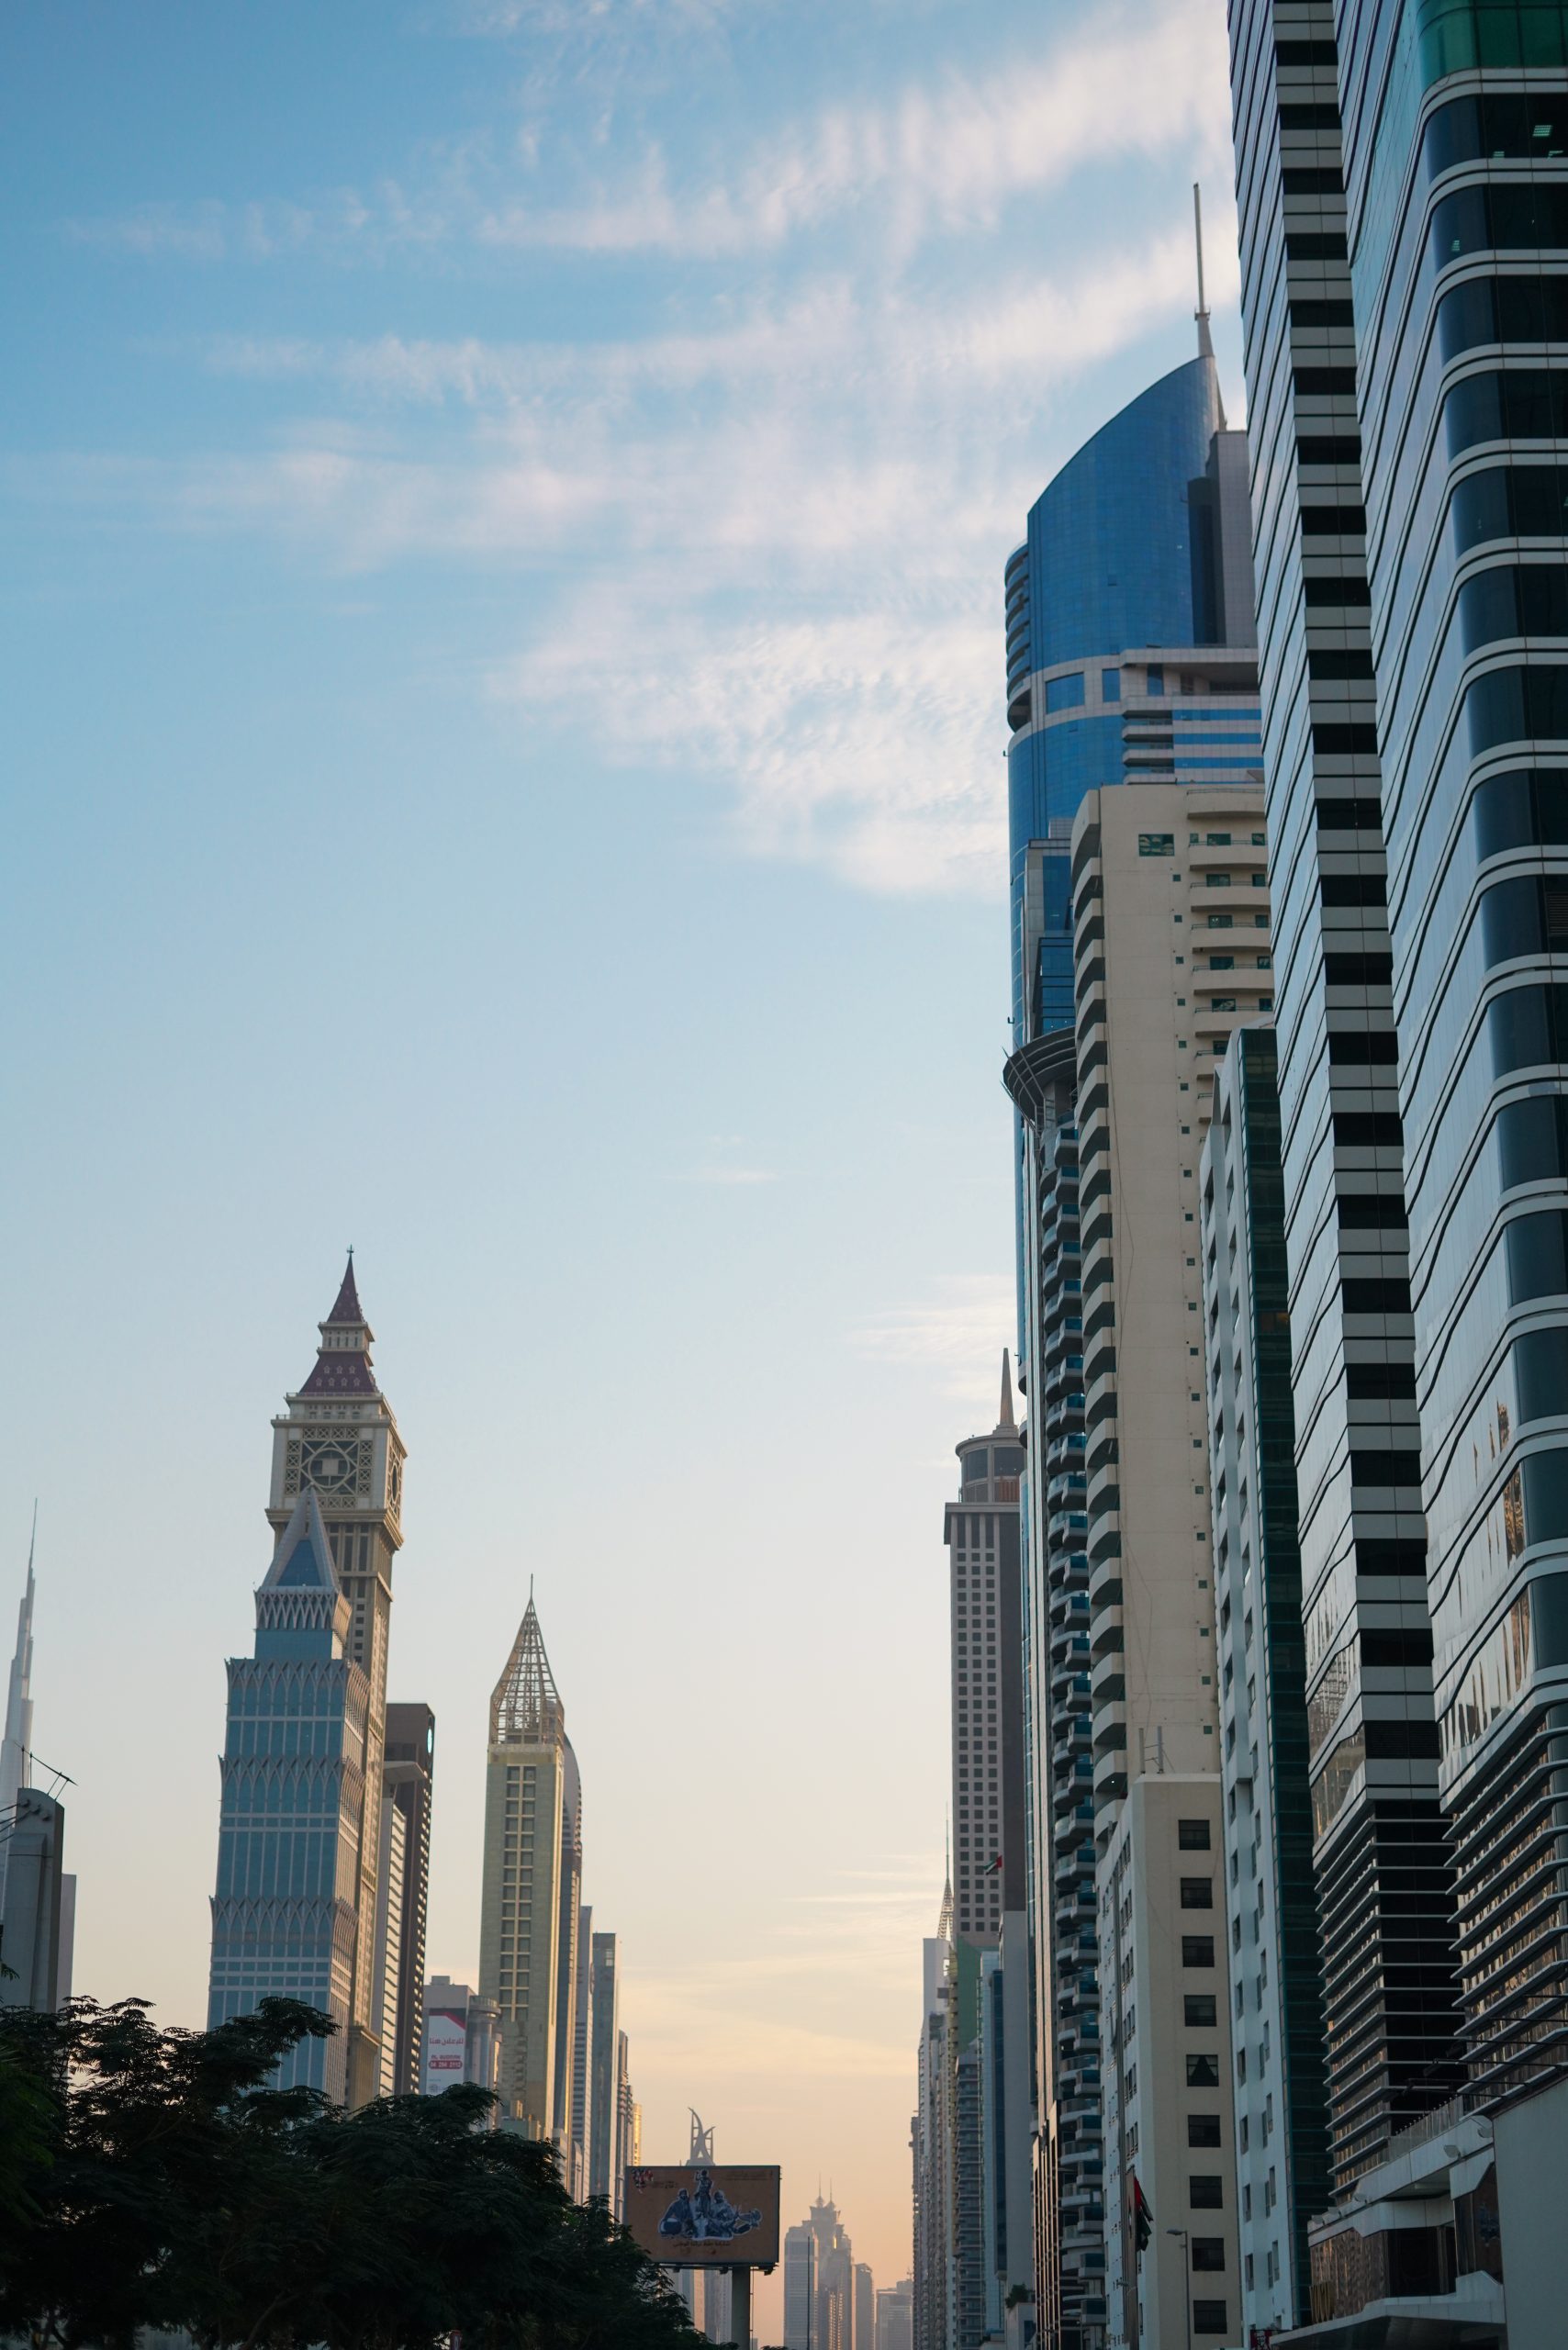 Architecture of Dubai